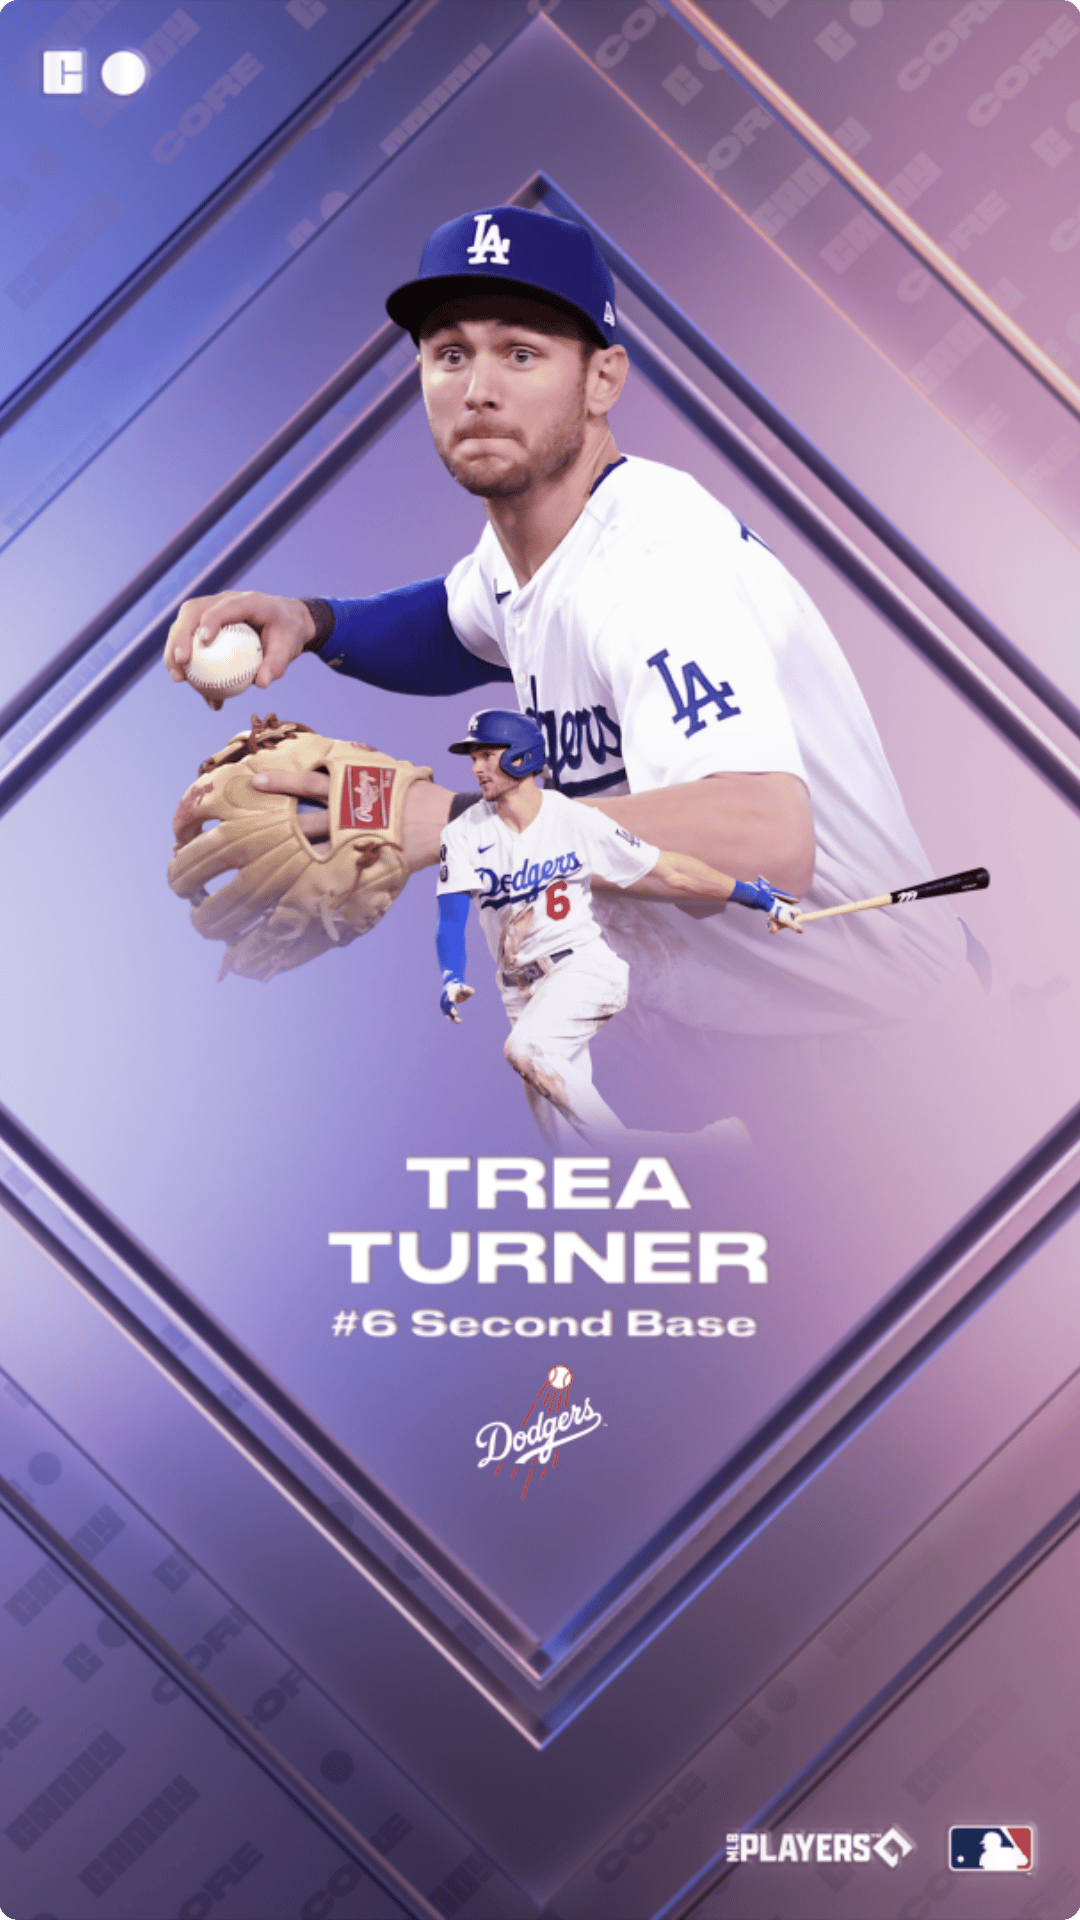 Trea Turner